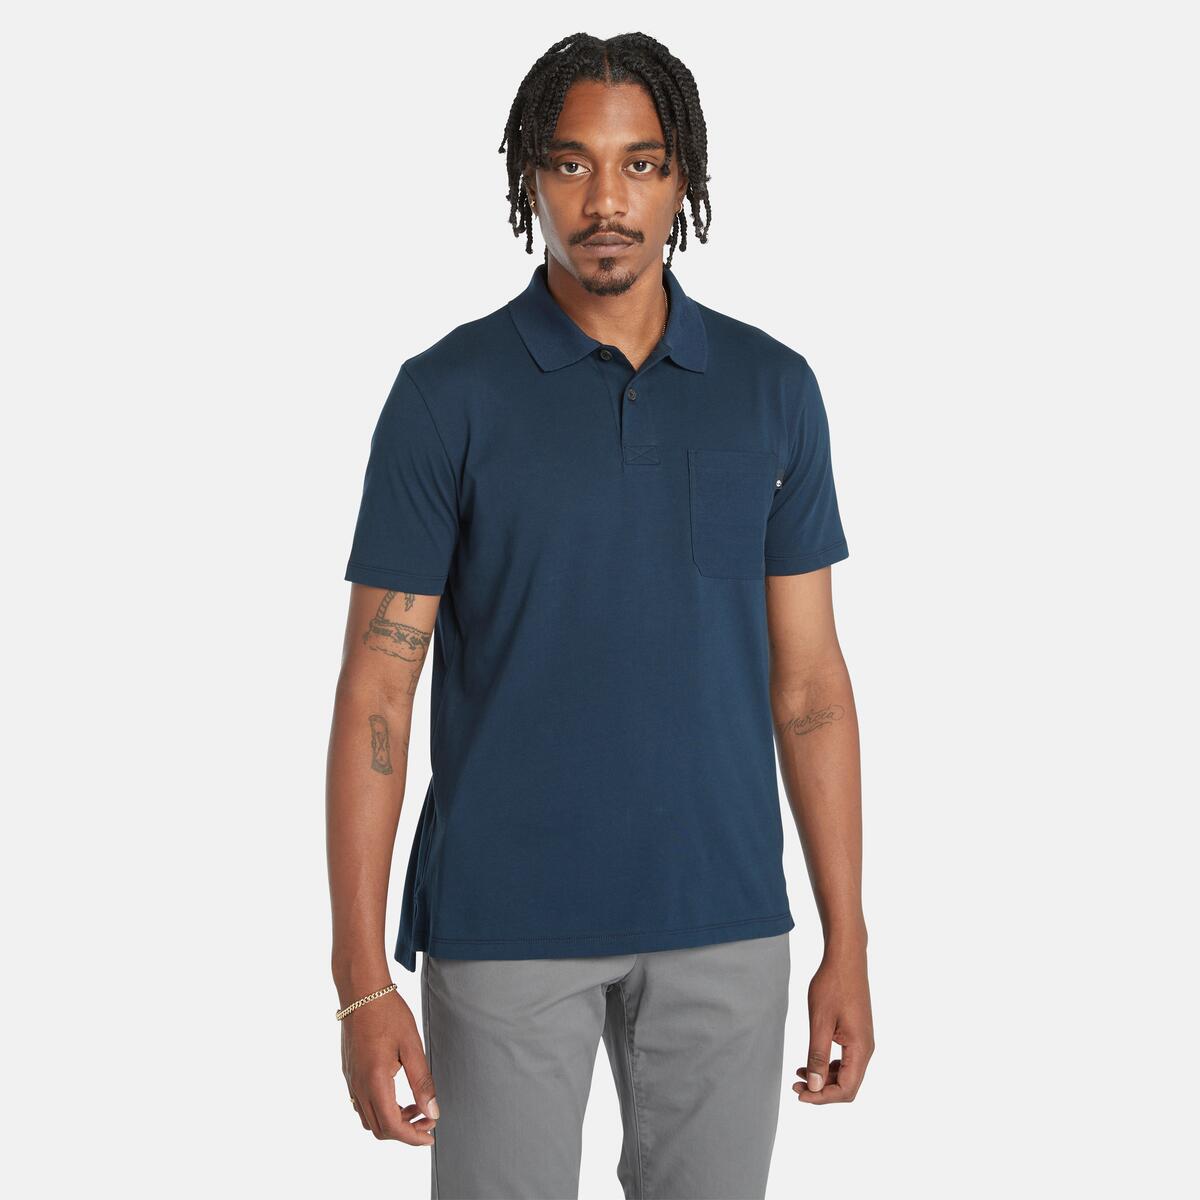 Men's Chest Pocket Jersey Polo Shirt - Timberland - Hong Kong